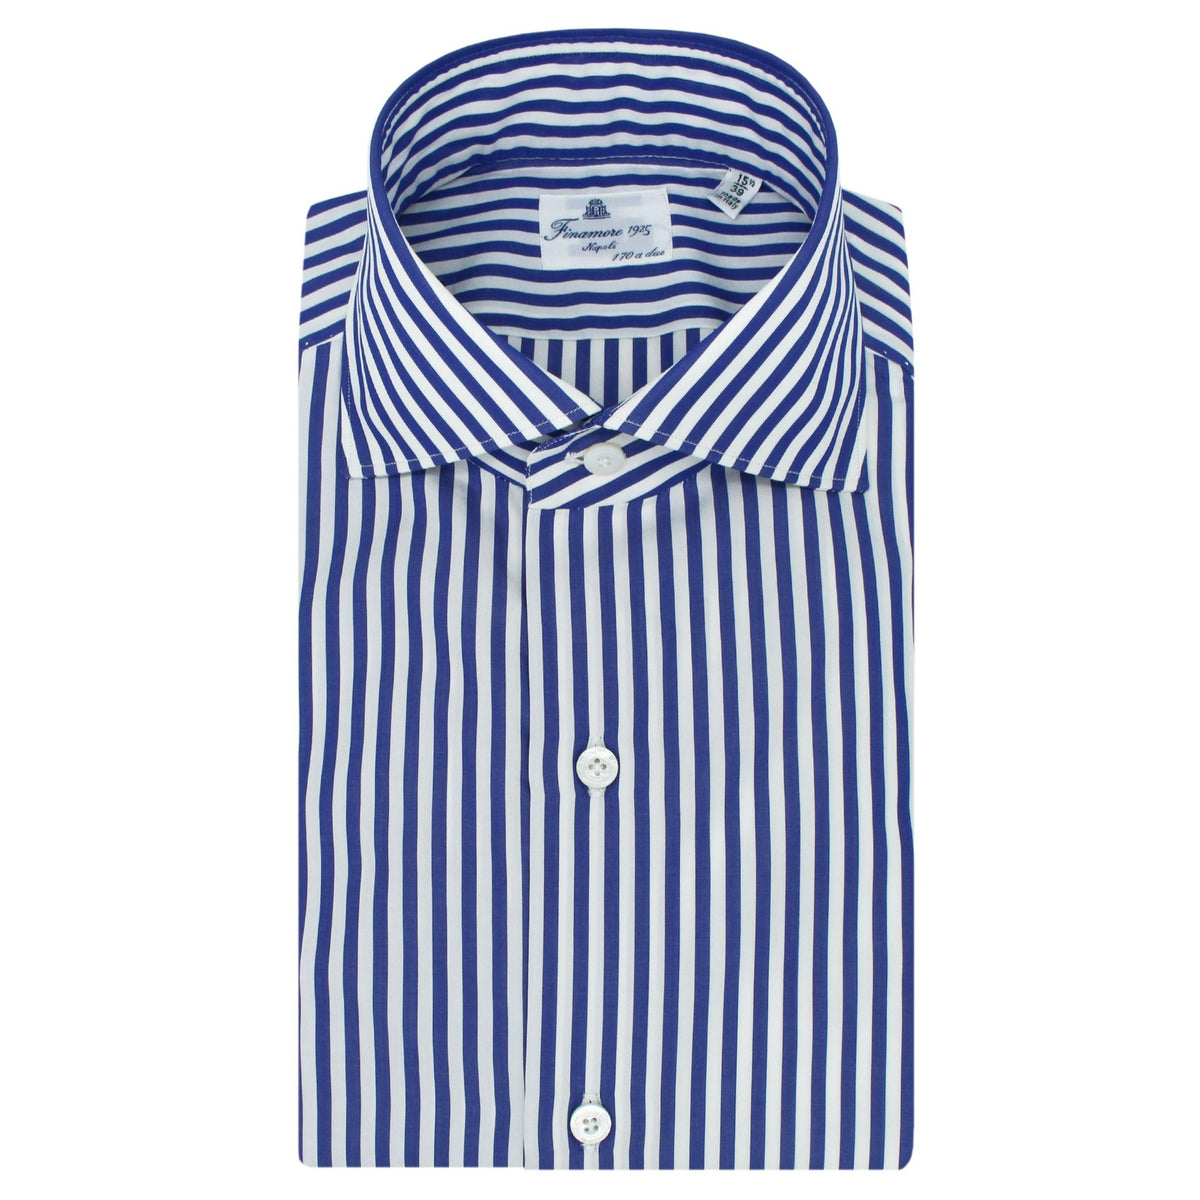 Classic slim fit shirt Milano cotton Giza 45 170 a due wide stripe blu